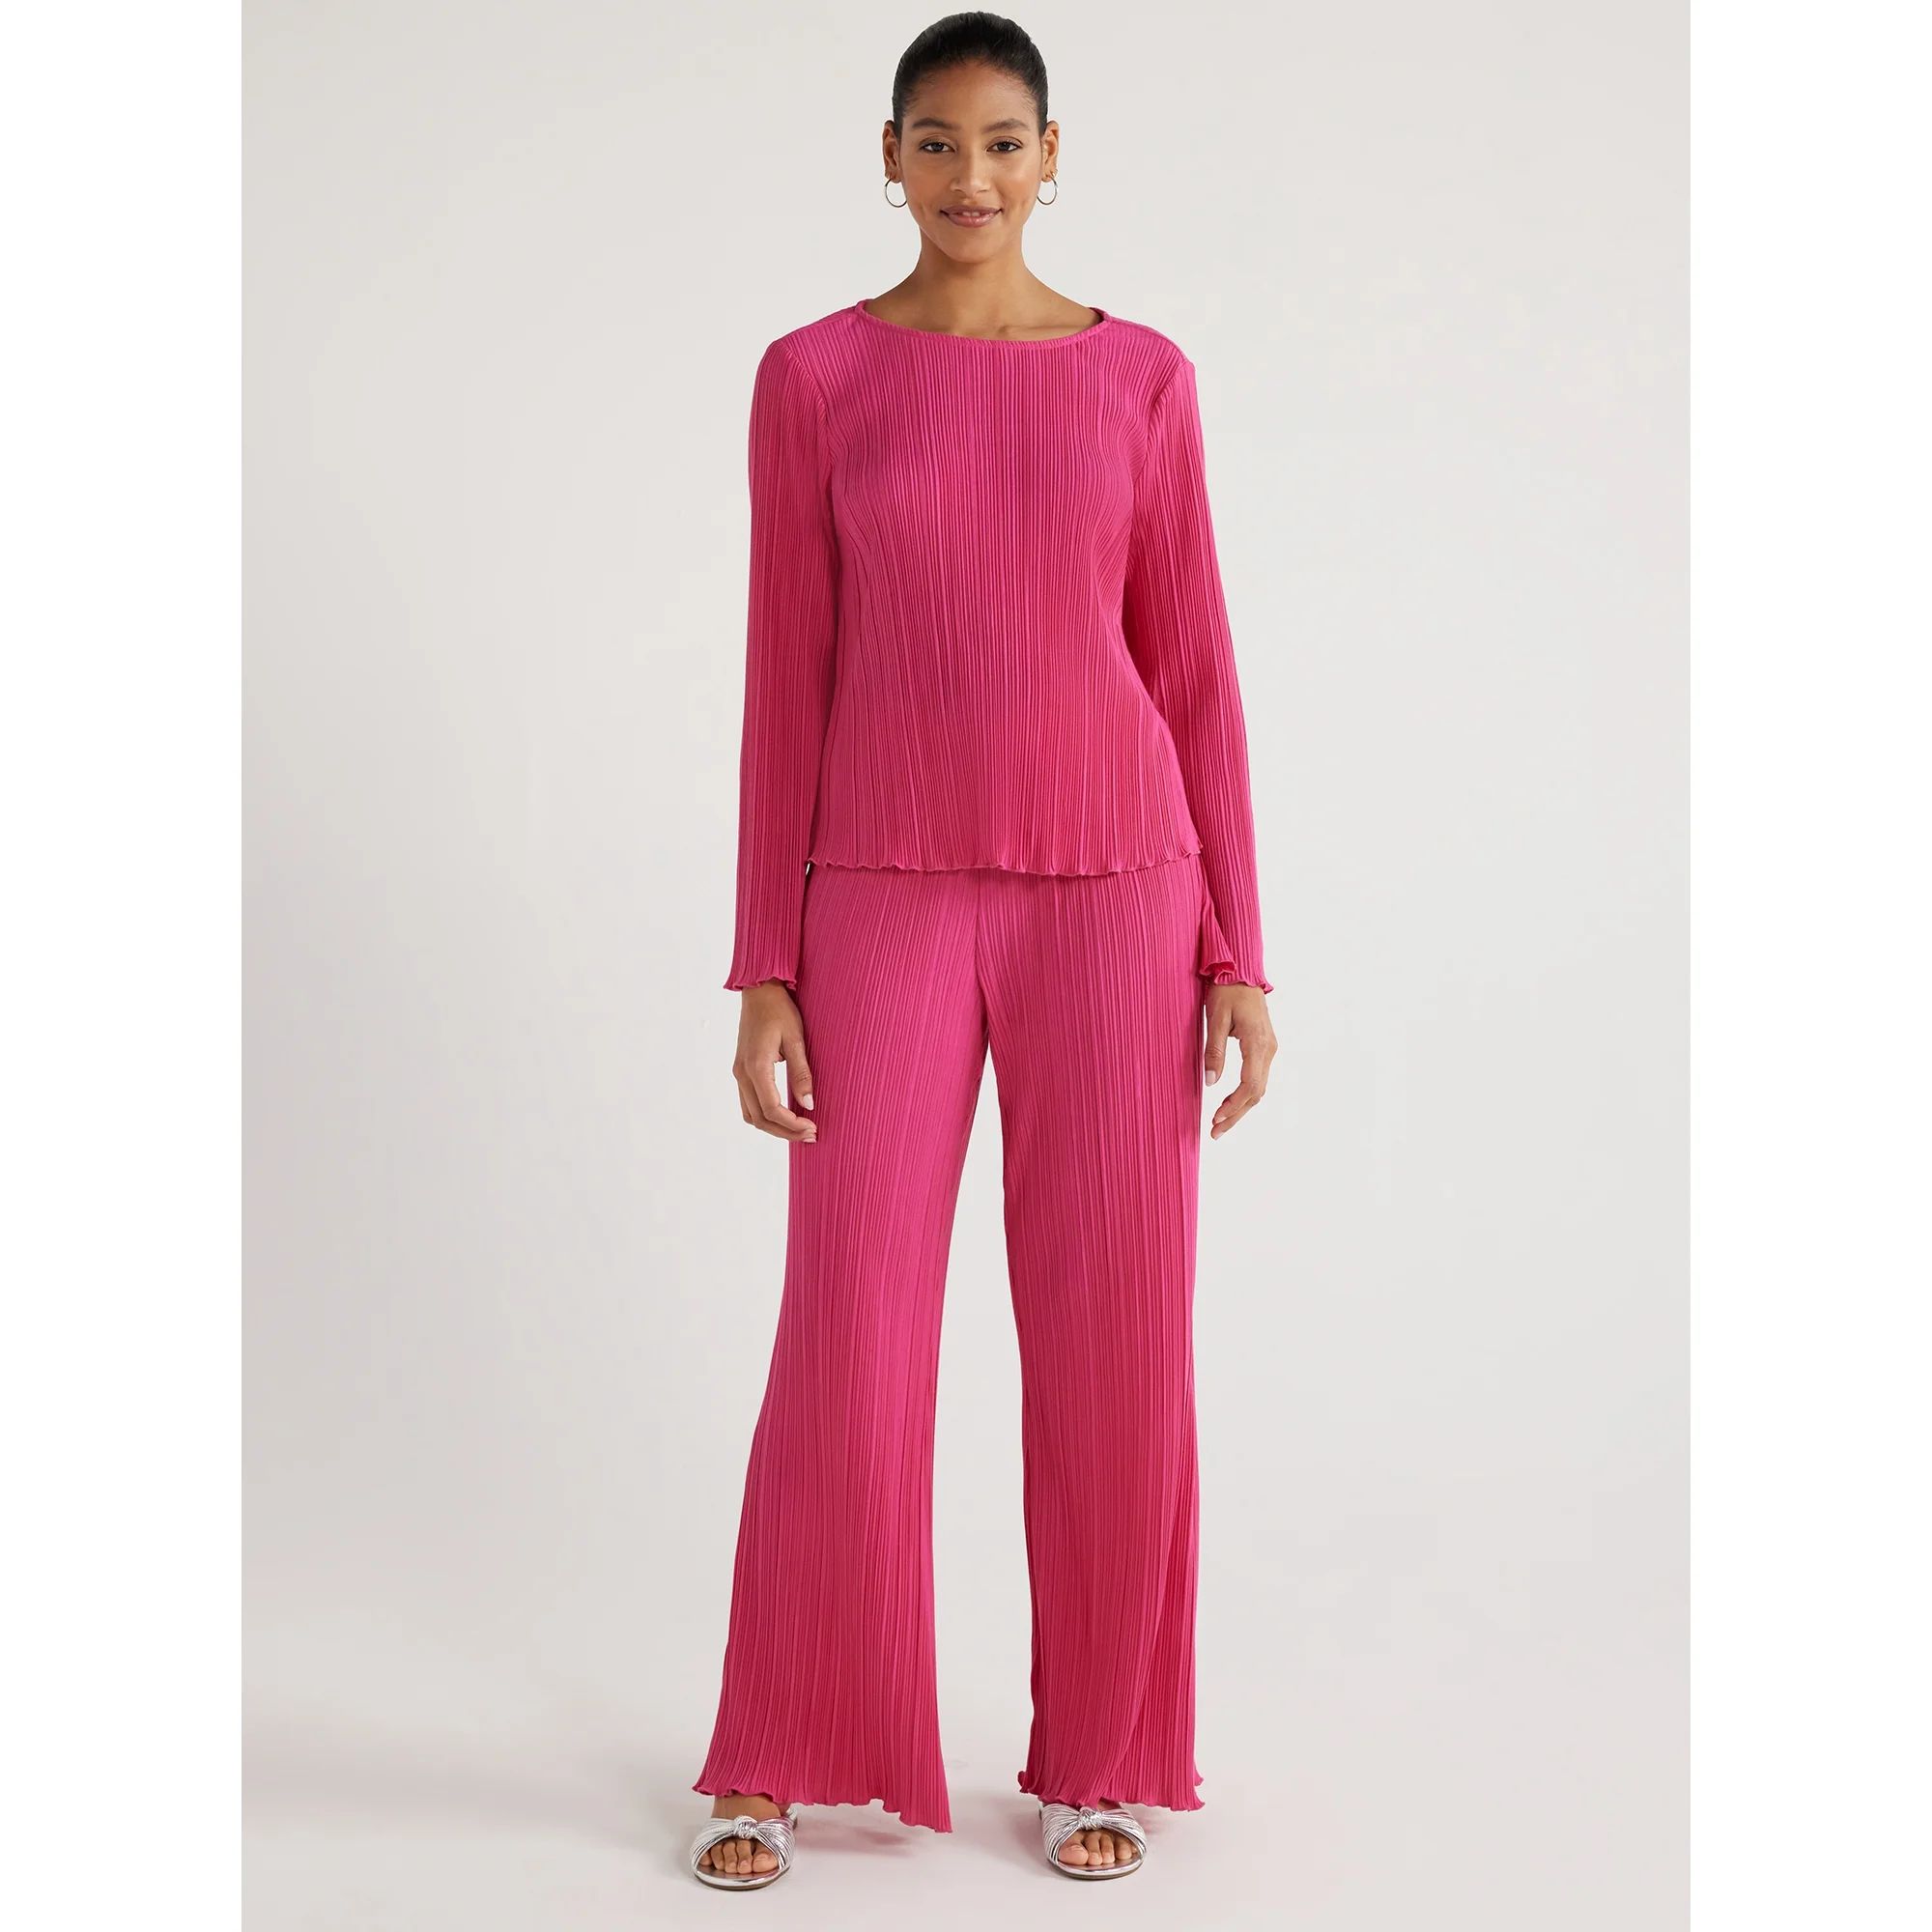 Scoop Women’s Crinkle Knit Wide Leg Pants, Sizes XS to XXL - Walmart.com | Walmart (US)